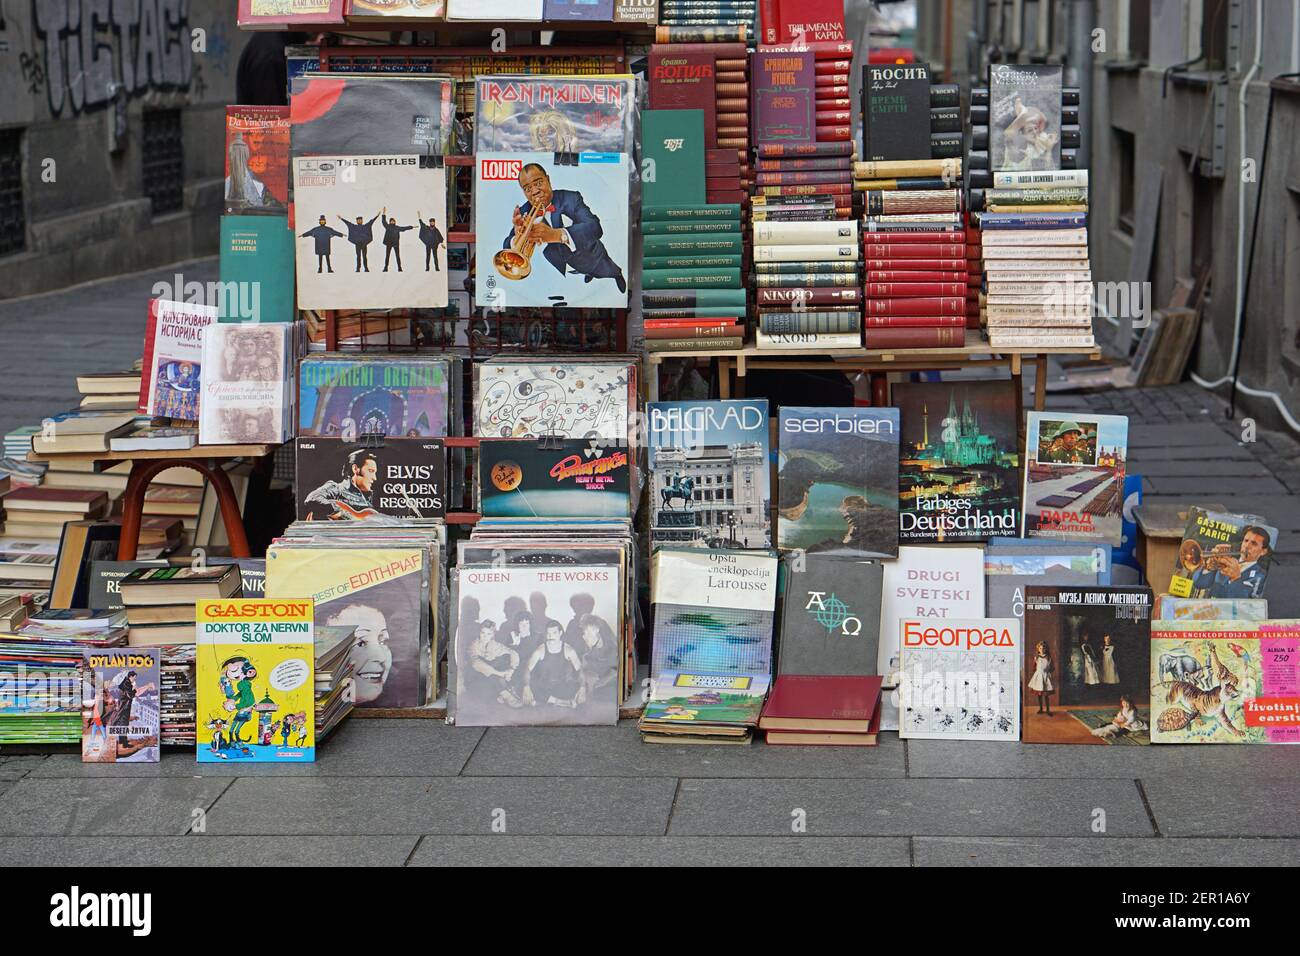 Belgrad, Serbien - 3. März 2016: Alte Bücher und Schallplatten am Straßenmarkt in der Stadt. Stockfoto